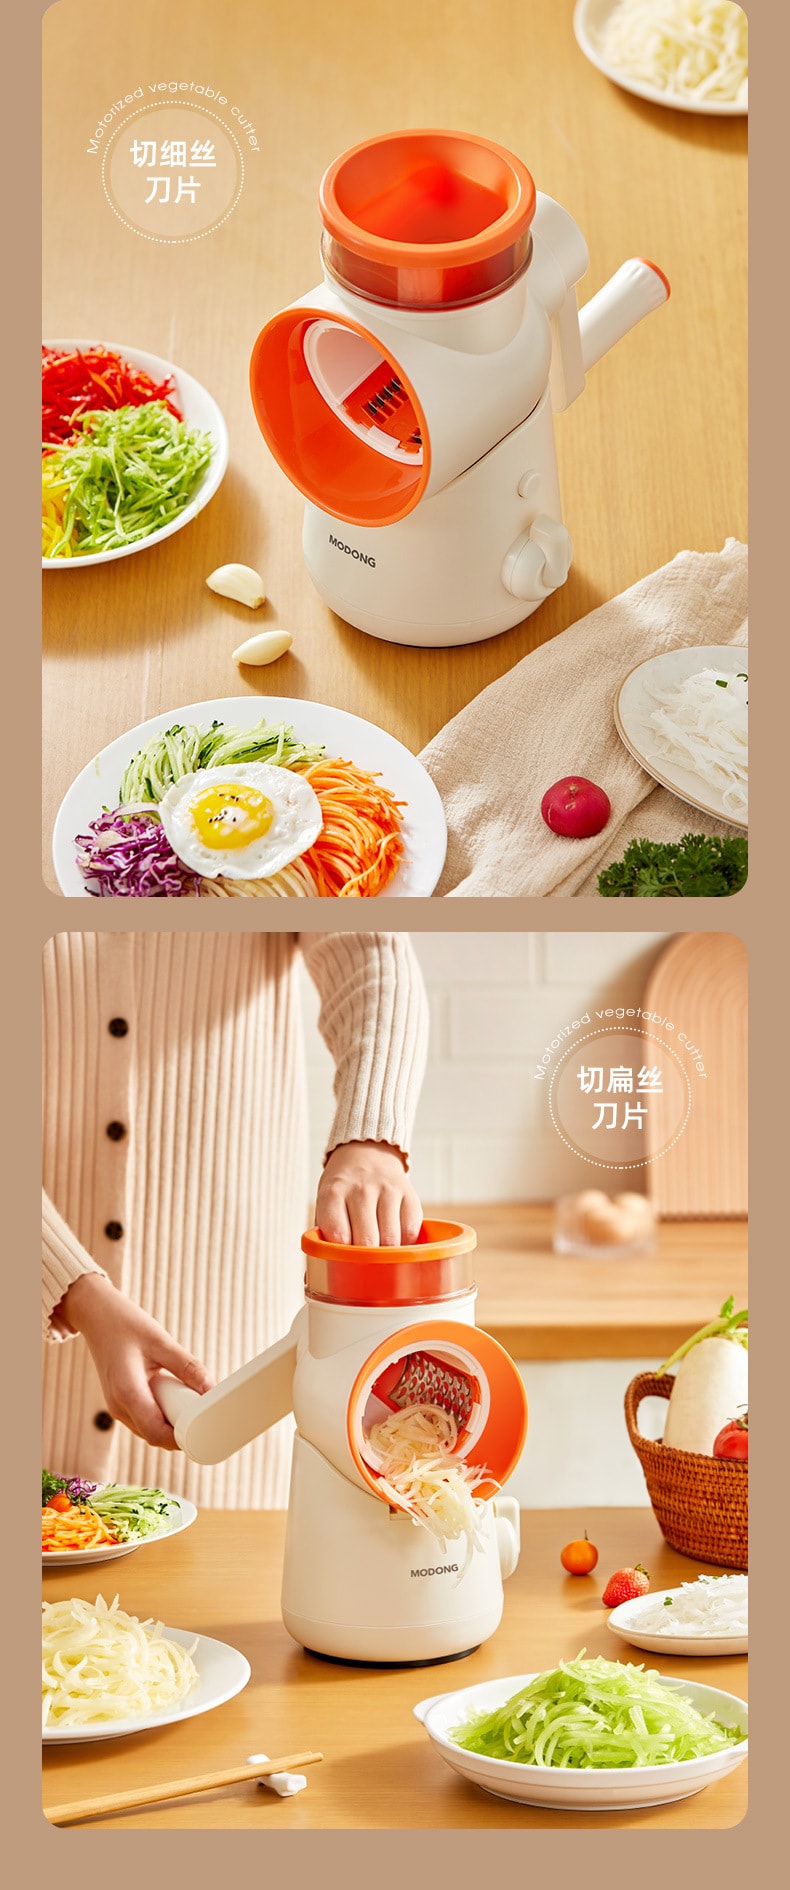 【中国直邮】MODONG摩动  滚筒切菜机家用多功能切菜机厨房土豆丝手摇切丝器切片  白色